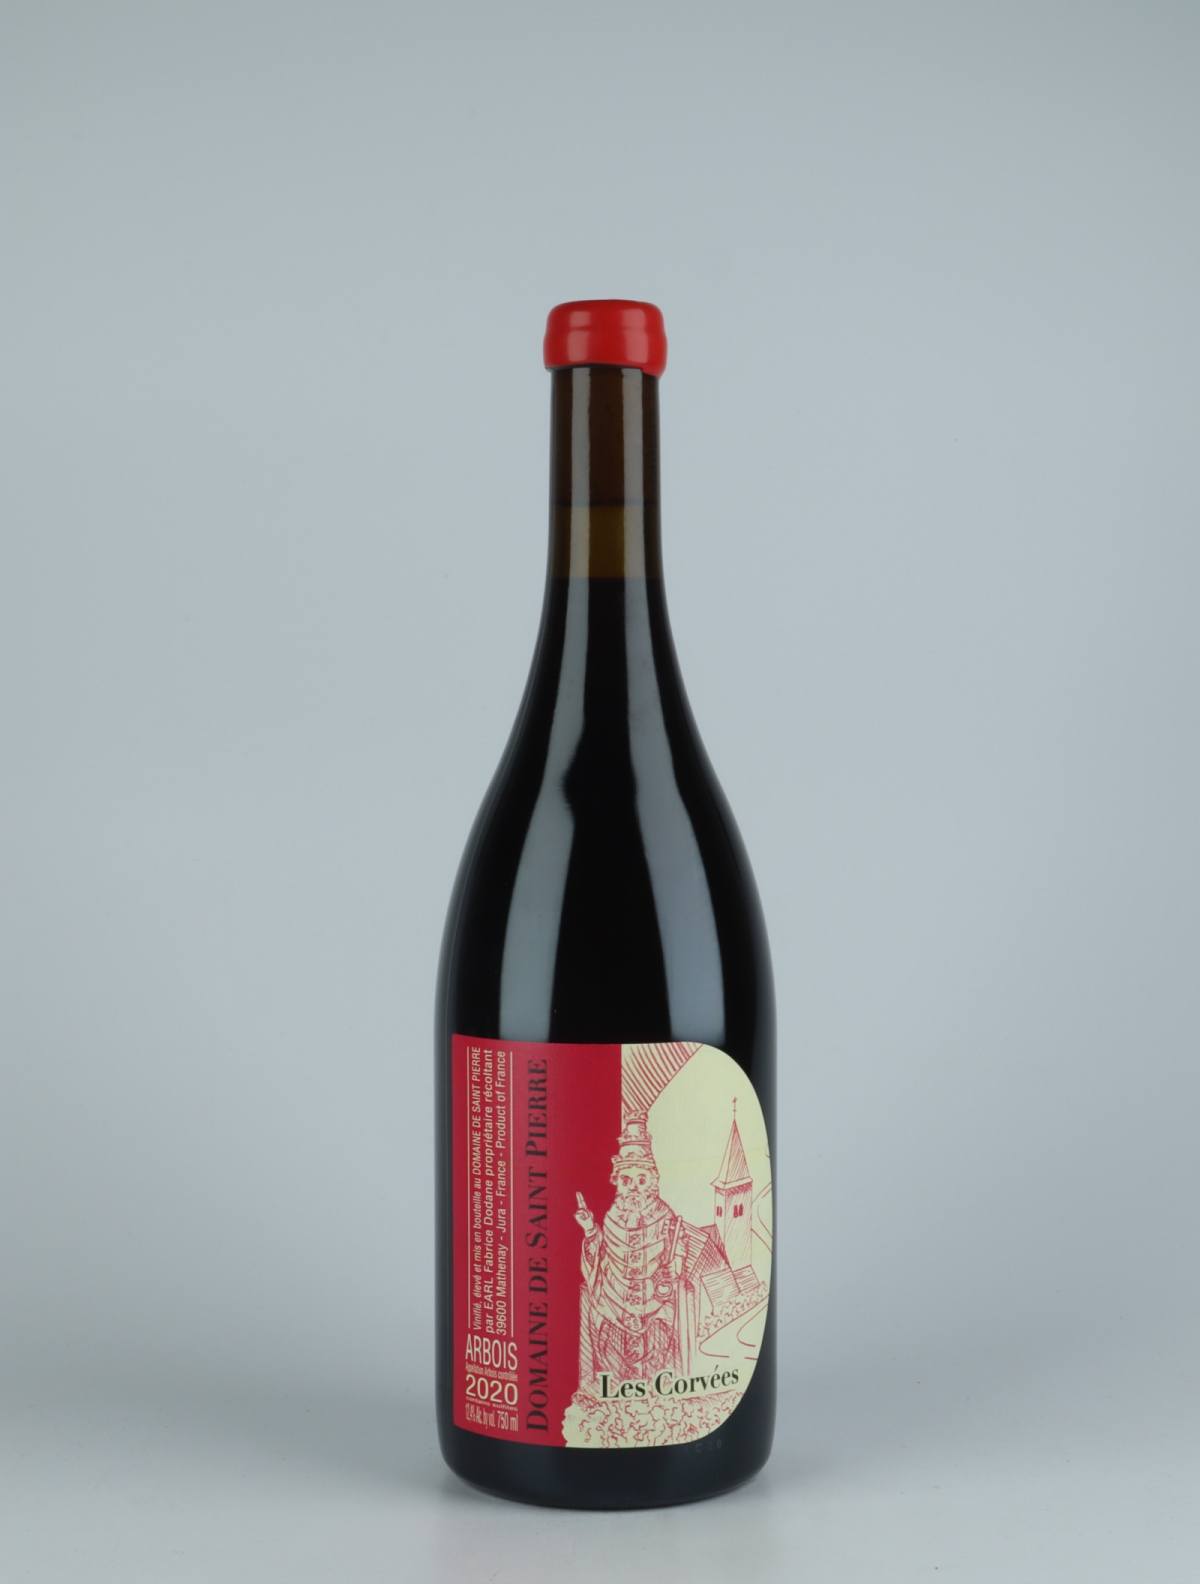 A bottle 2020 Arbois Rouge - Les Corvées Red wine from Domaine de Saint Pierre, Jura in France